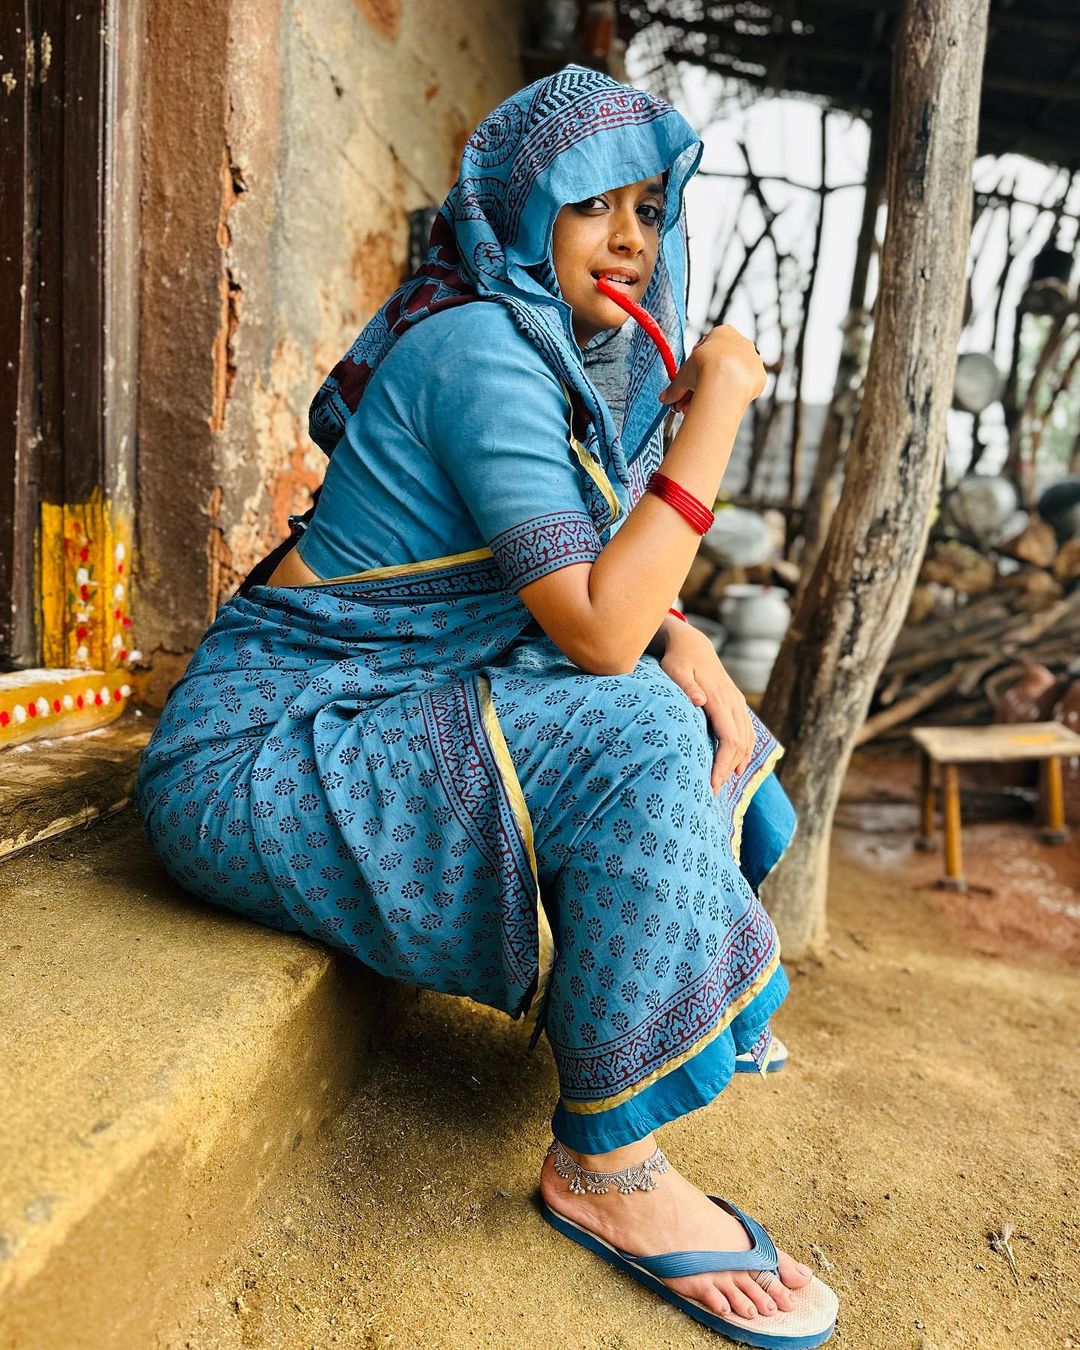 Keerthy Suresh | దసరా (Dasara) చిత్రం నాకు సరికొత్త అనుభూతిని అందించింద‌ని కీర్తి సురేష్ (Keerthy Suresh) చెప్పింది. ( Photos : Instagram )